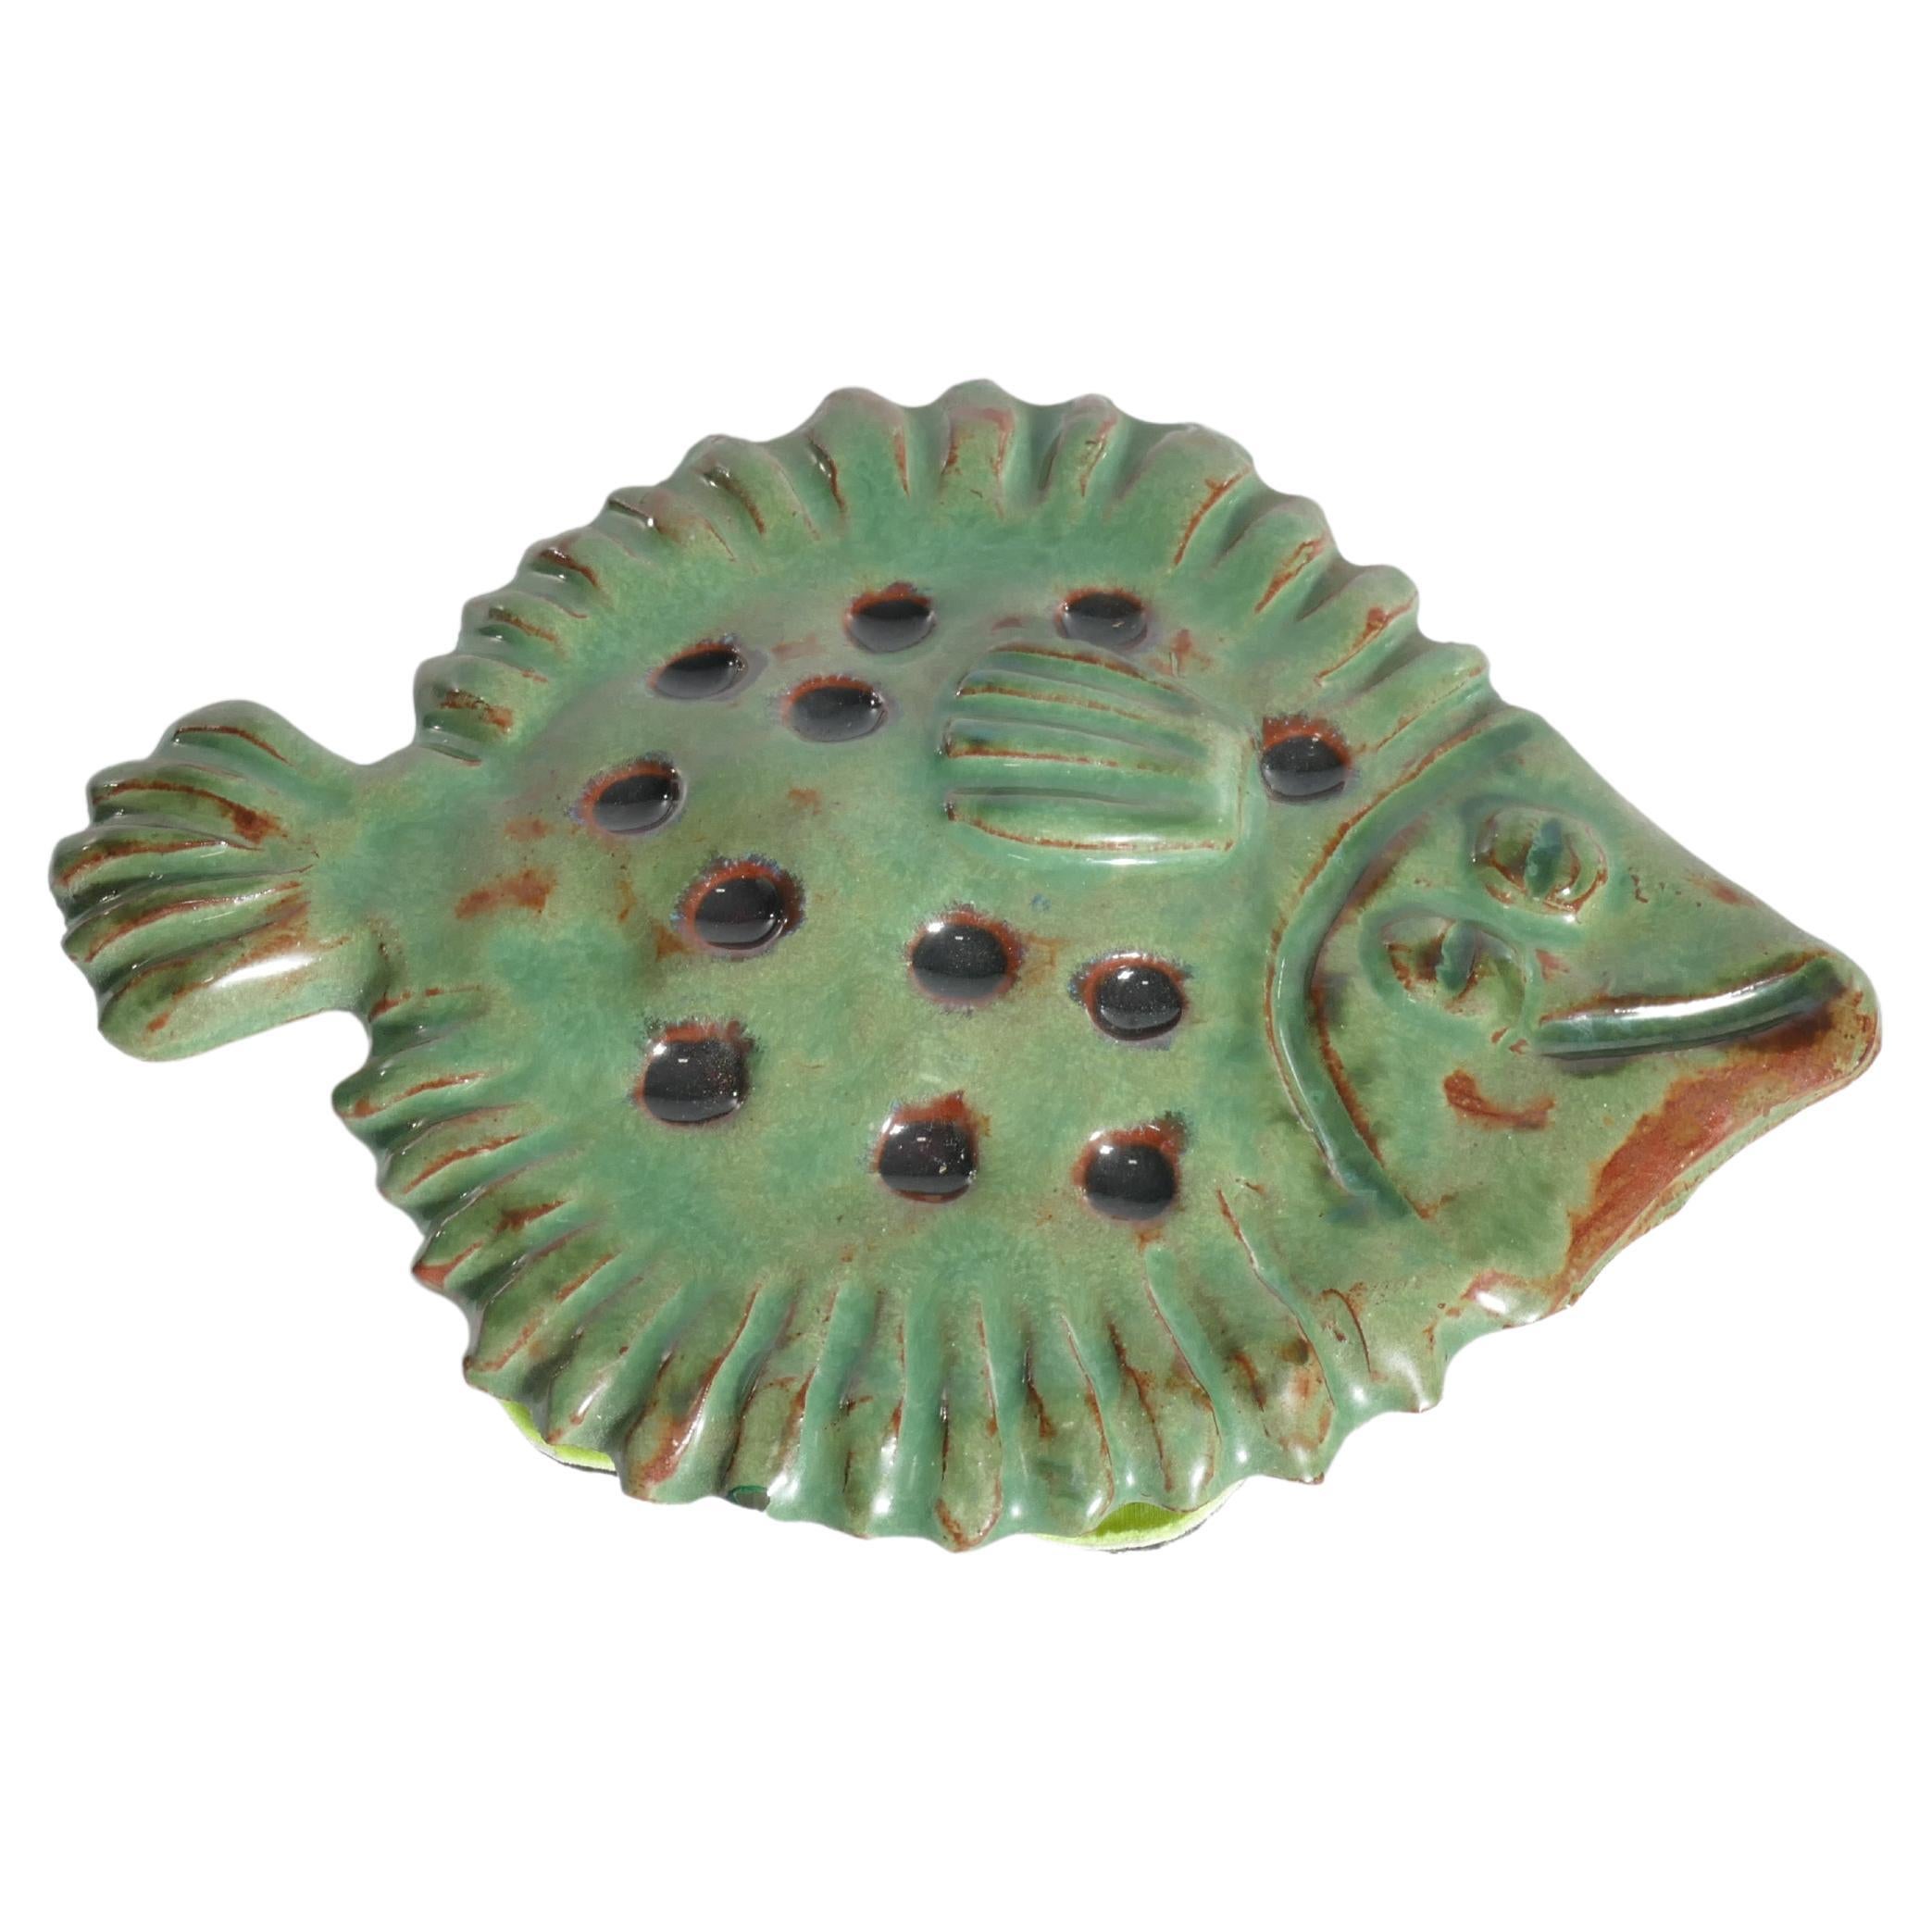 Vintage Green Ceramic Flounder Fish by Allan Hellman, Sweden 1981 For Sale